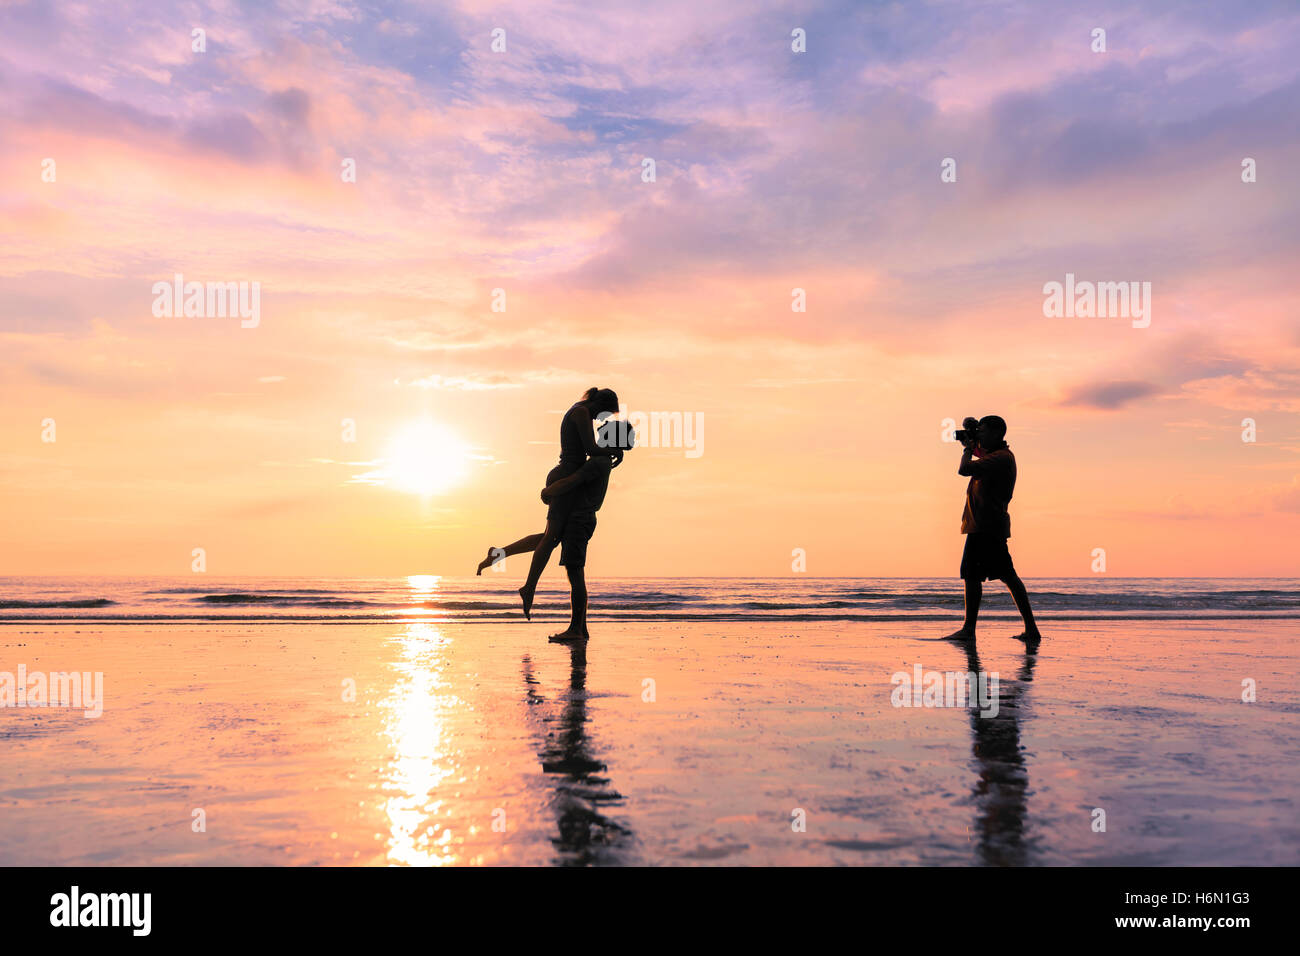 Photographe de prendre une photo d'un couple sur la plage pendant le coucher du soleil - concept à propos de miel et voyages romantiques Banque D'Images